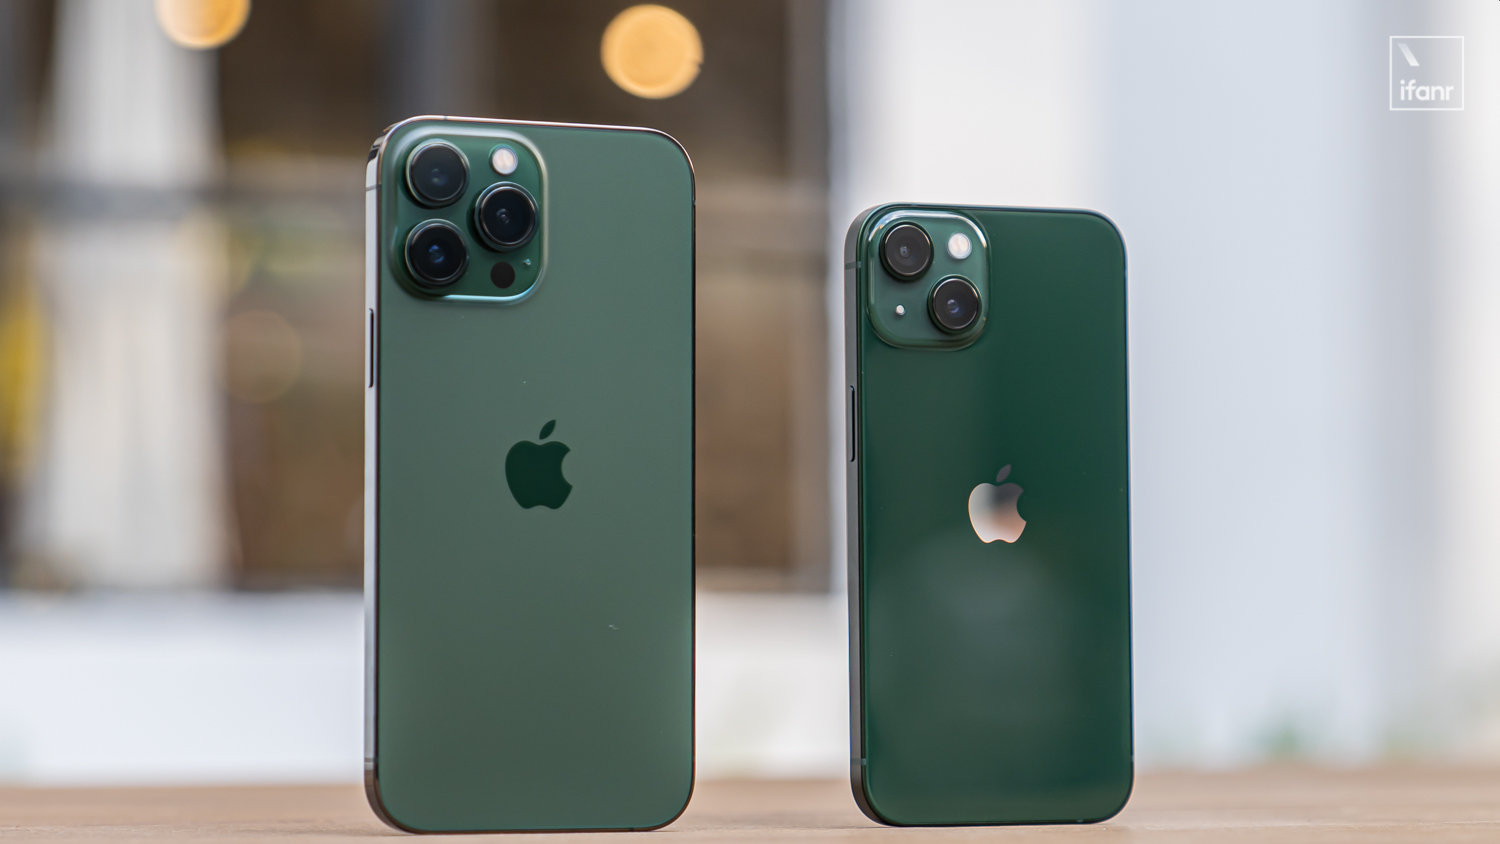 iPhone 14 2022 sẽ có màu xanh mint cực xinh - Ngọc Linh Mobile